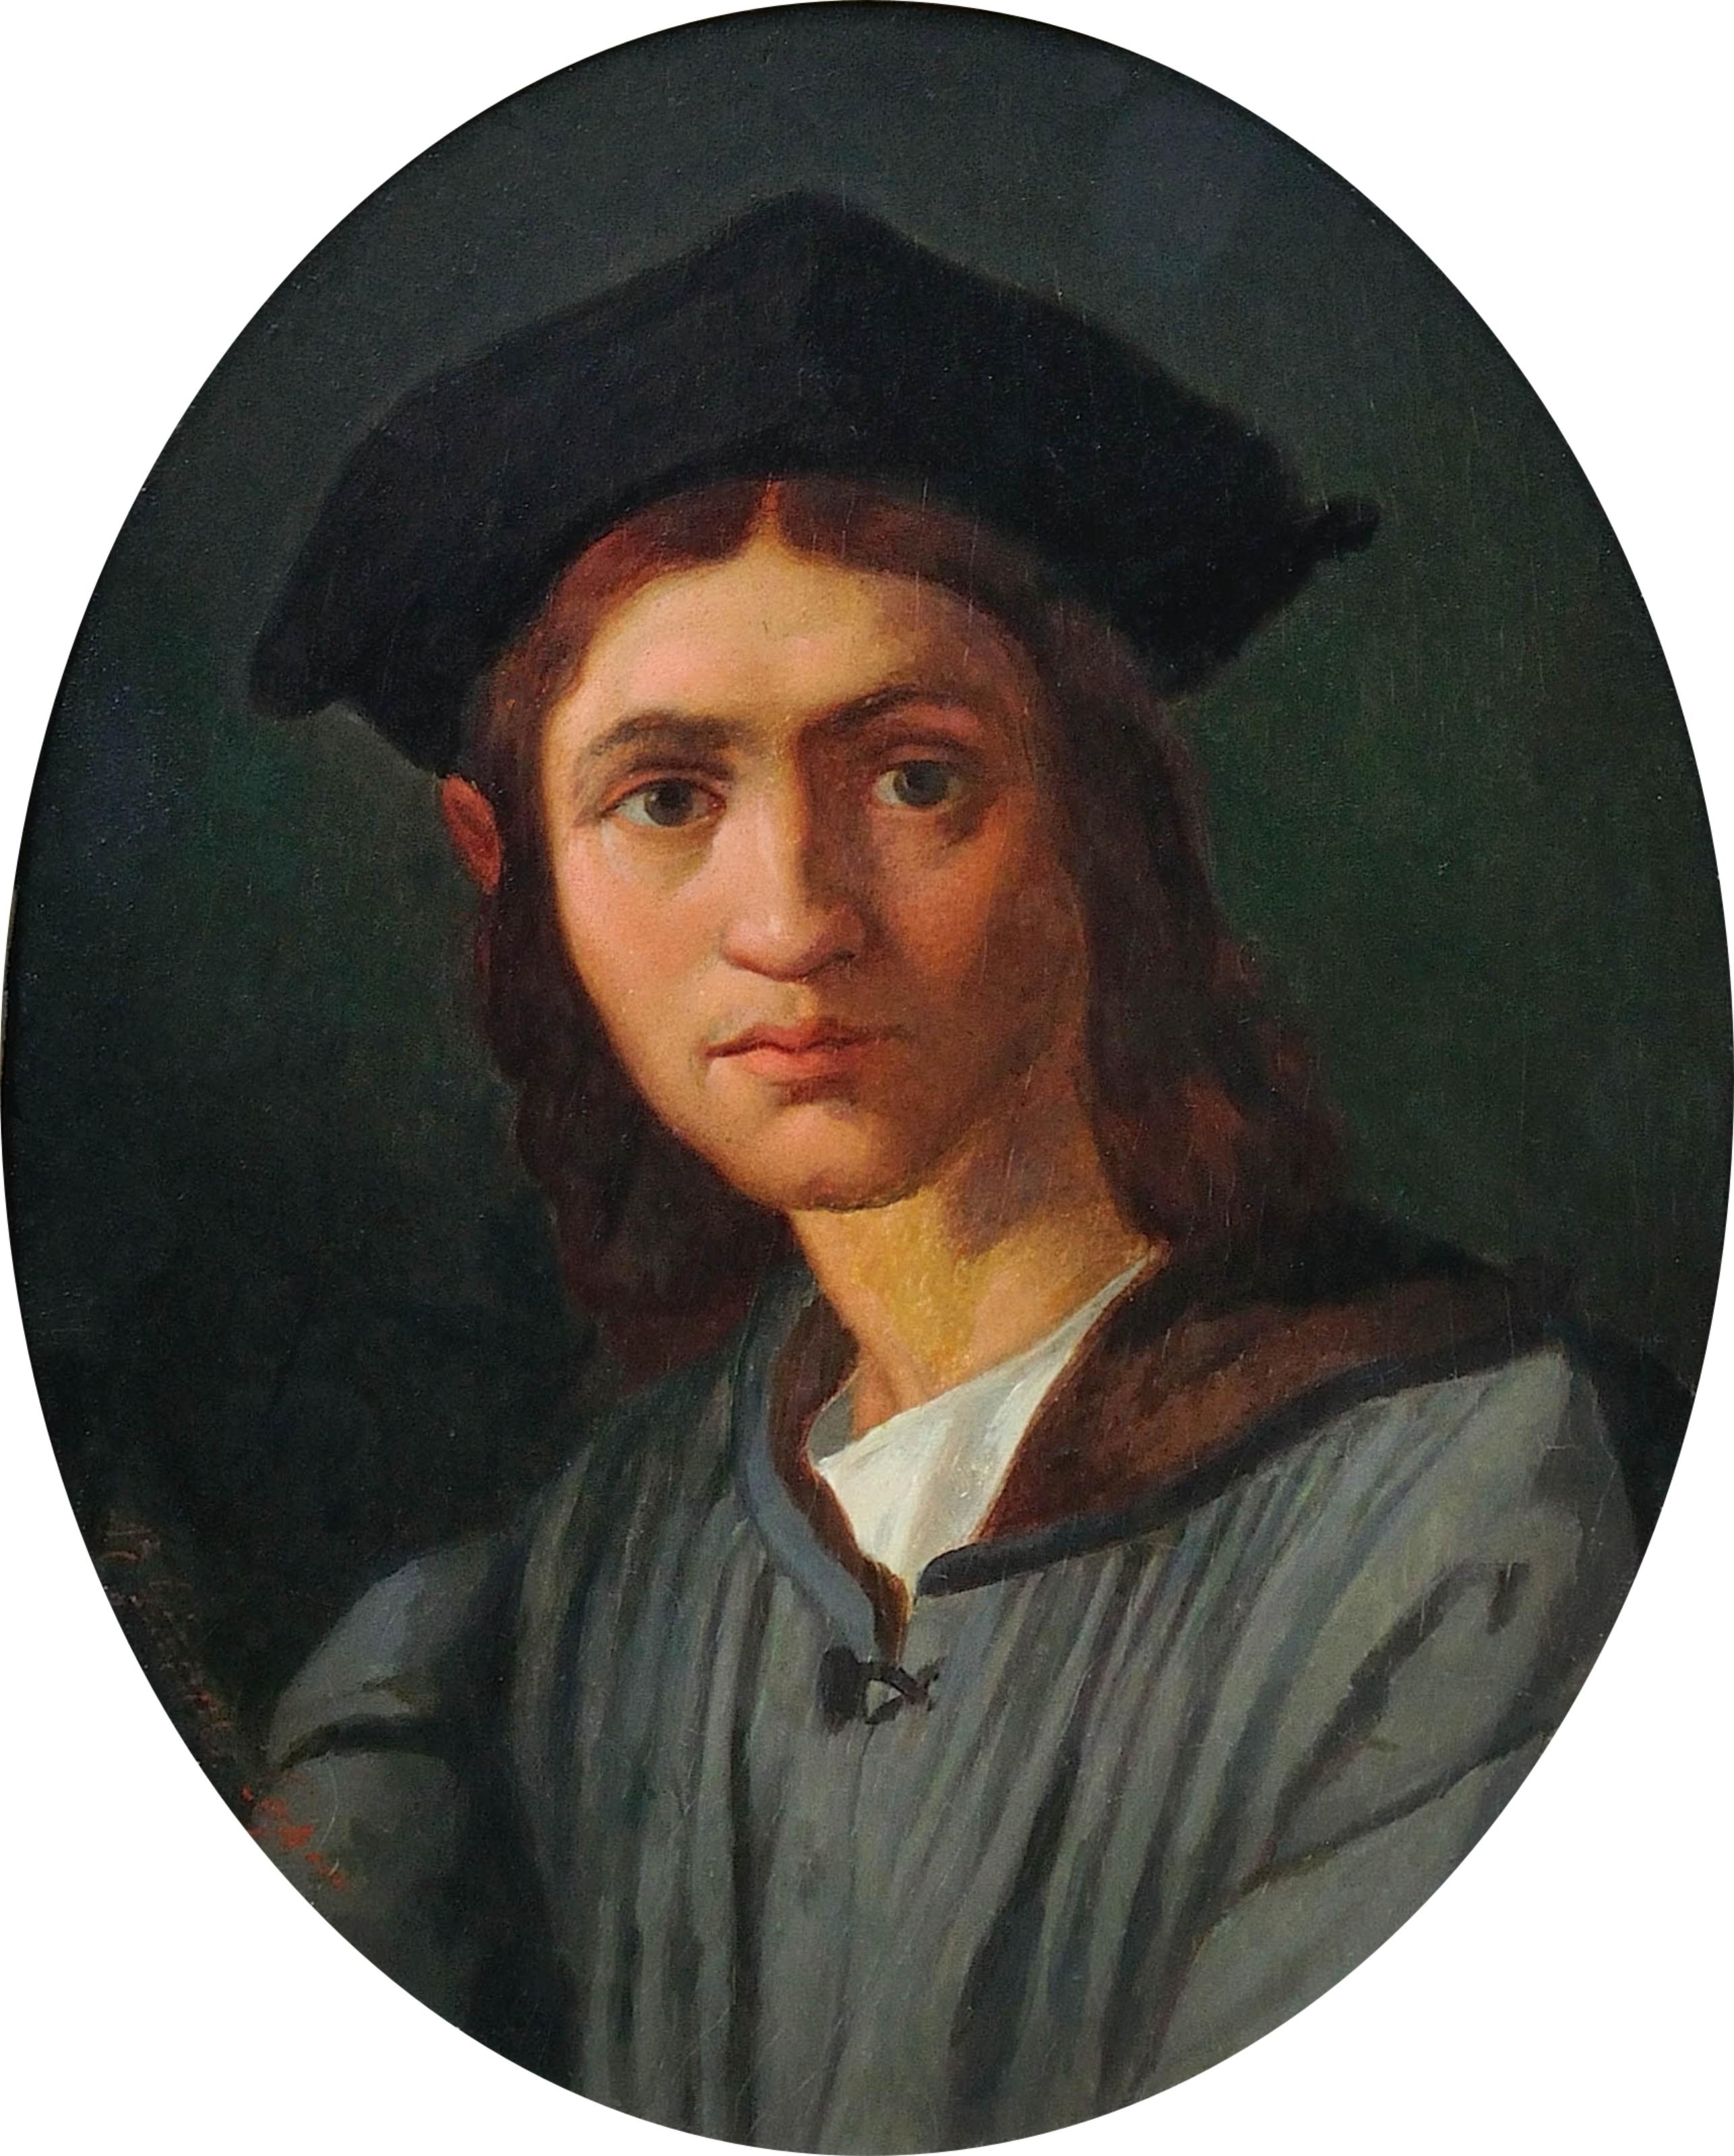 after Andrea del Sarto circa 1863. Portrait of Baccio Bandinelli. Uffizi Gallery - Painting by Andrea Del Sarto 